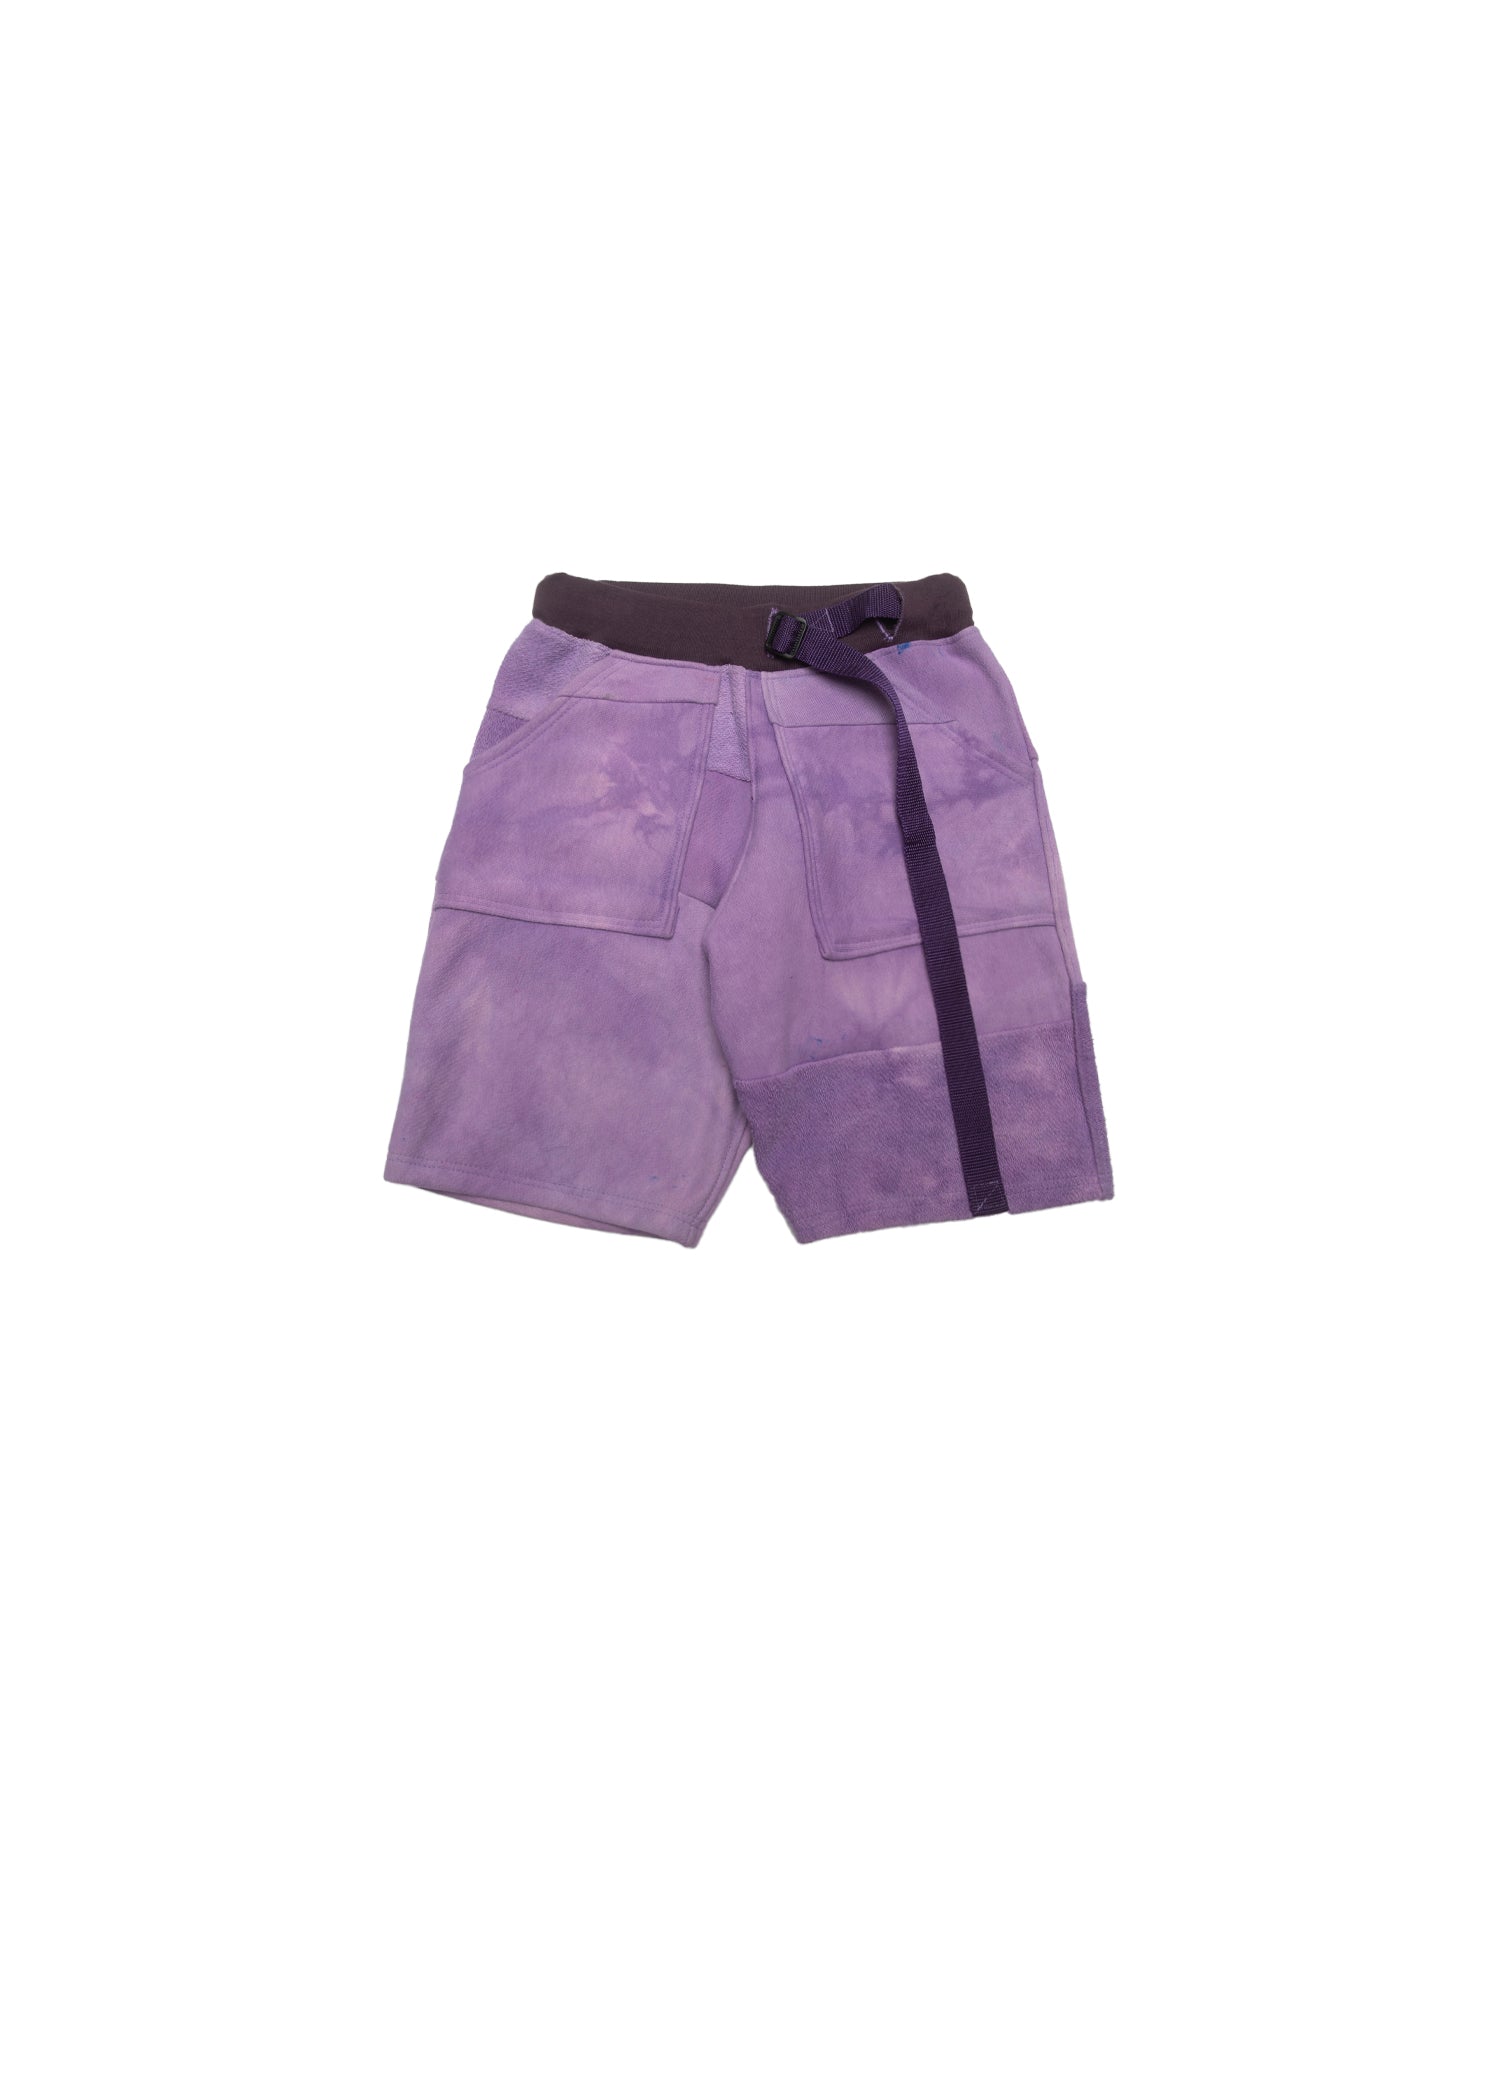 Lavender Women's Short